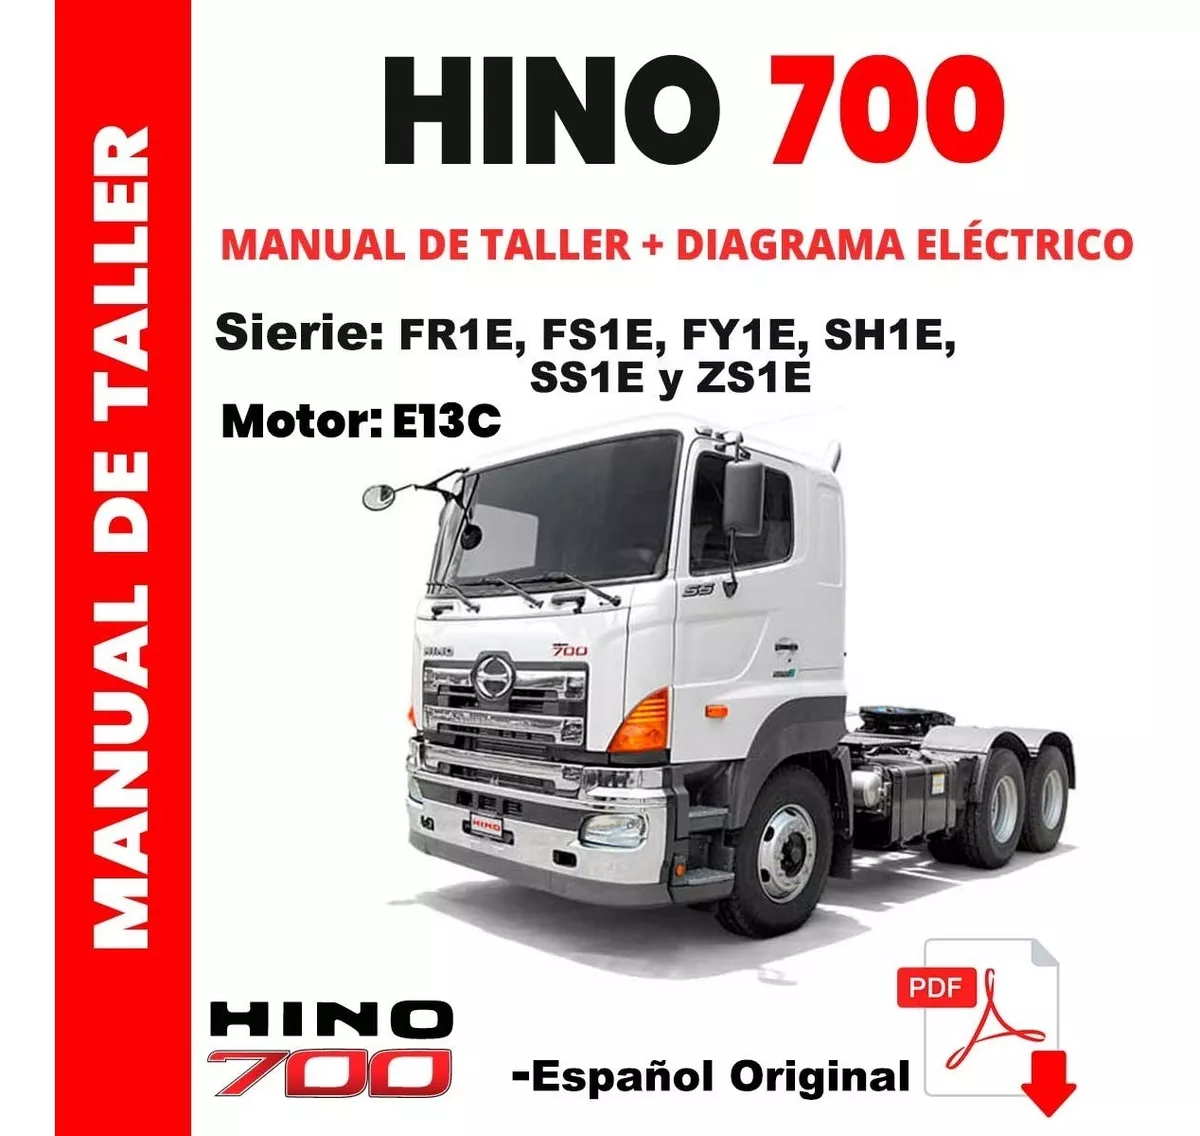 Manual De Taller Hino 700 Series E13c Diagramas Electricos - Data manuales